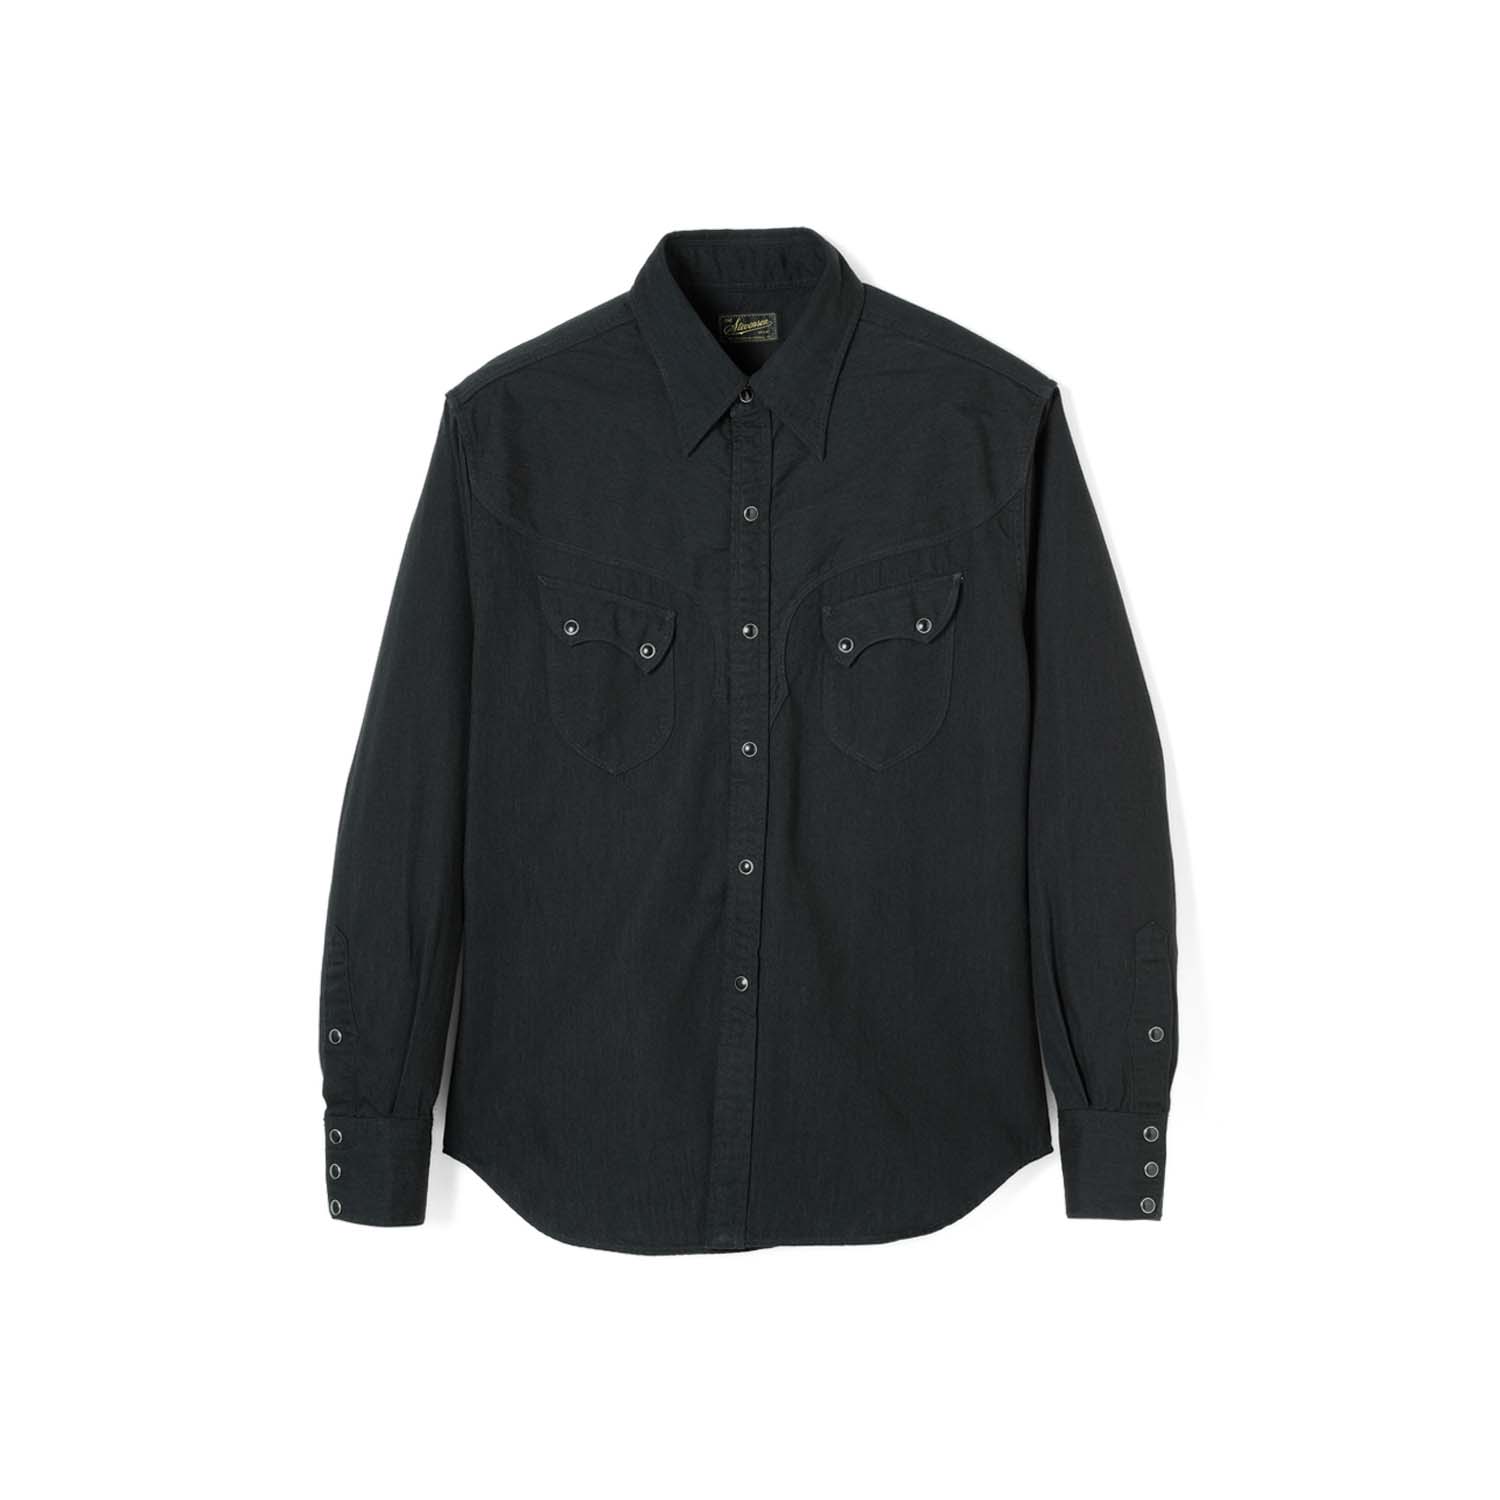 Stevenson Overall Co. Cody Western Shirt Black